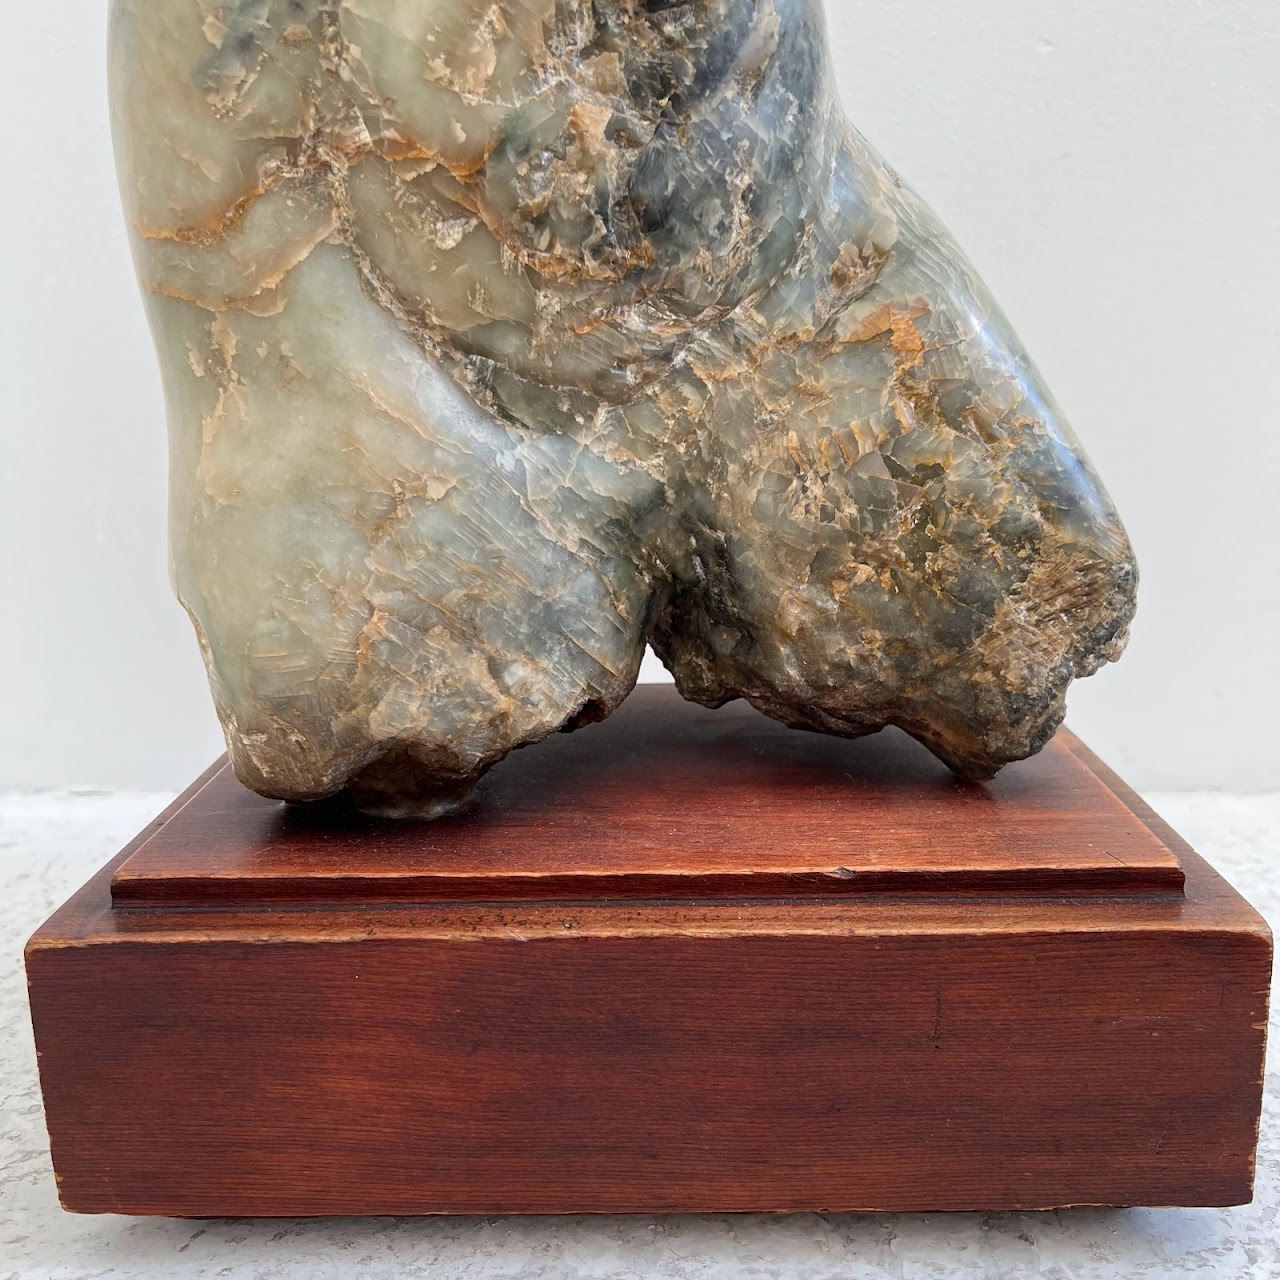 Modern Figural Granite & Quartz Sculpture